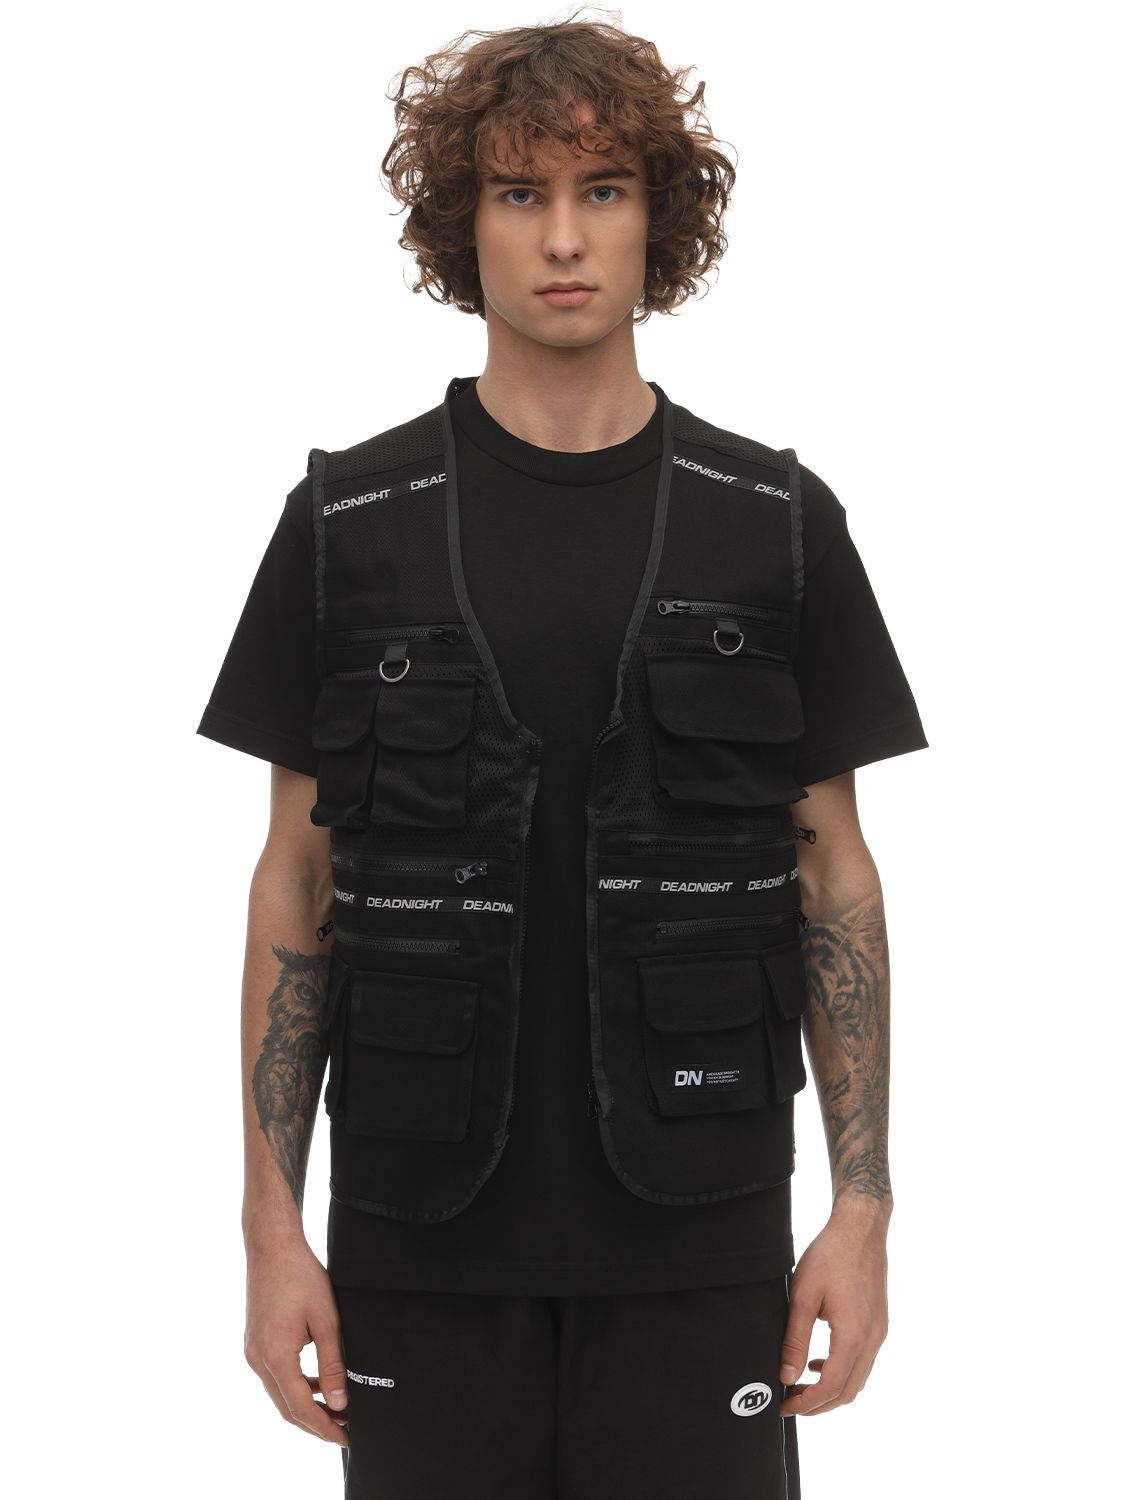 Deadnight Medical Vest In Black